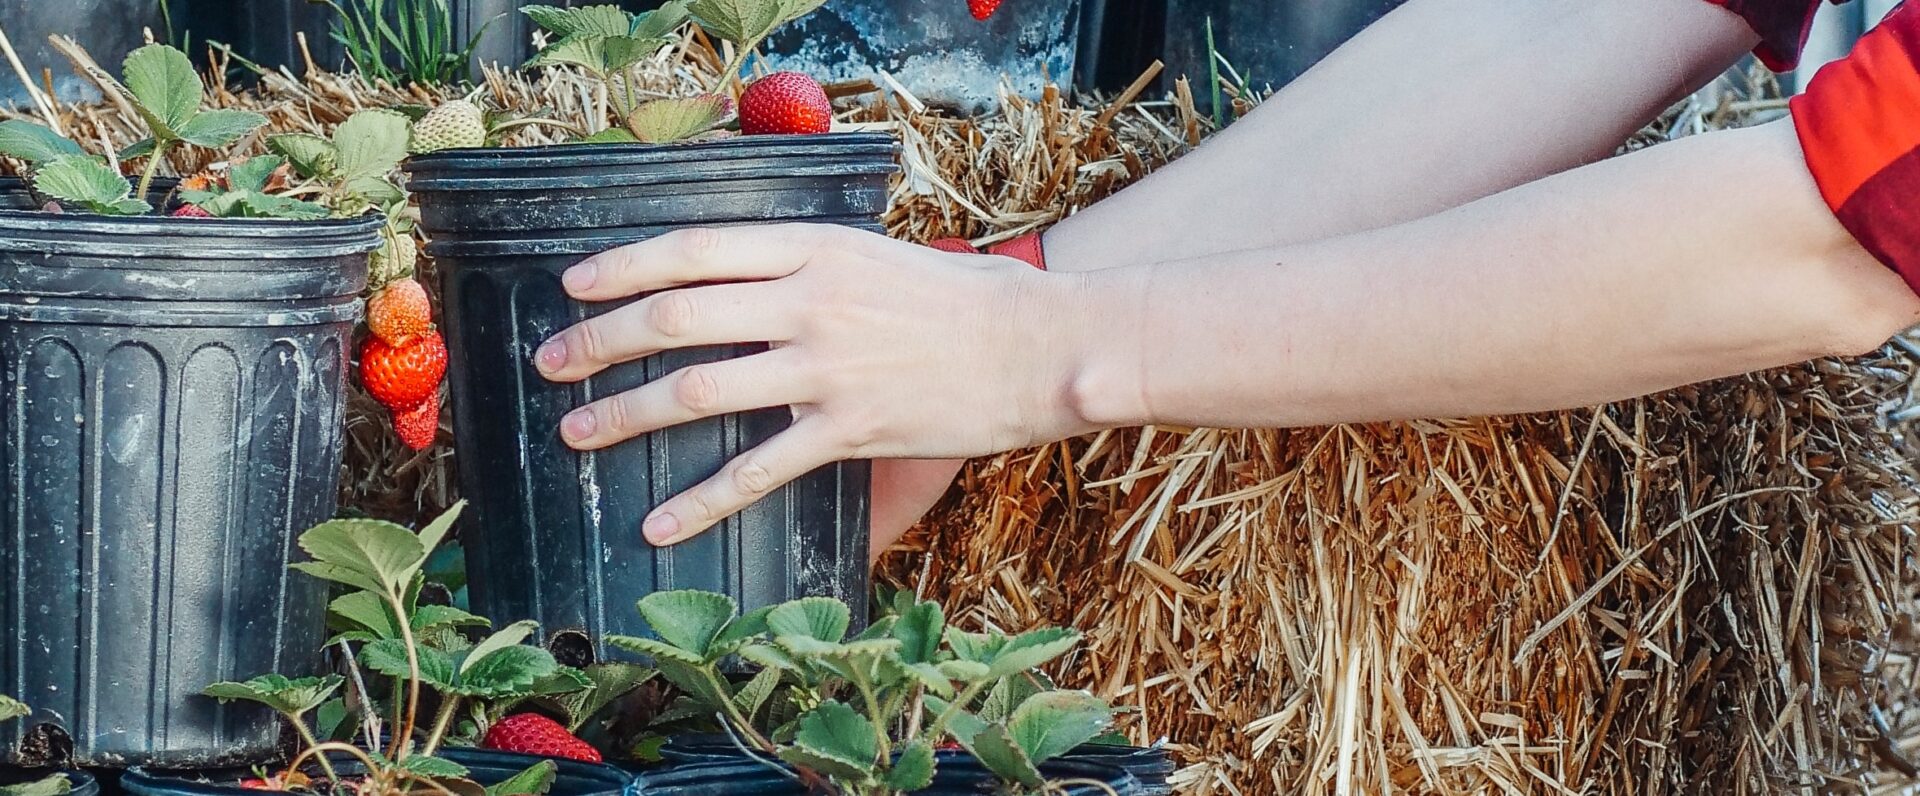 Kädet ovat tarttuneet ruukkuun, jossa kasvaa mansikoita.